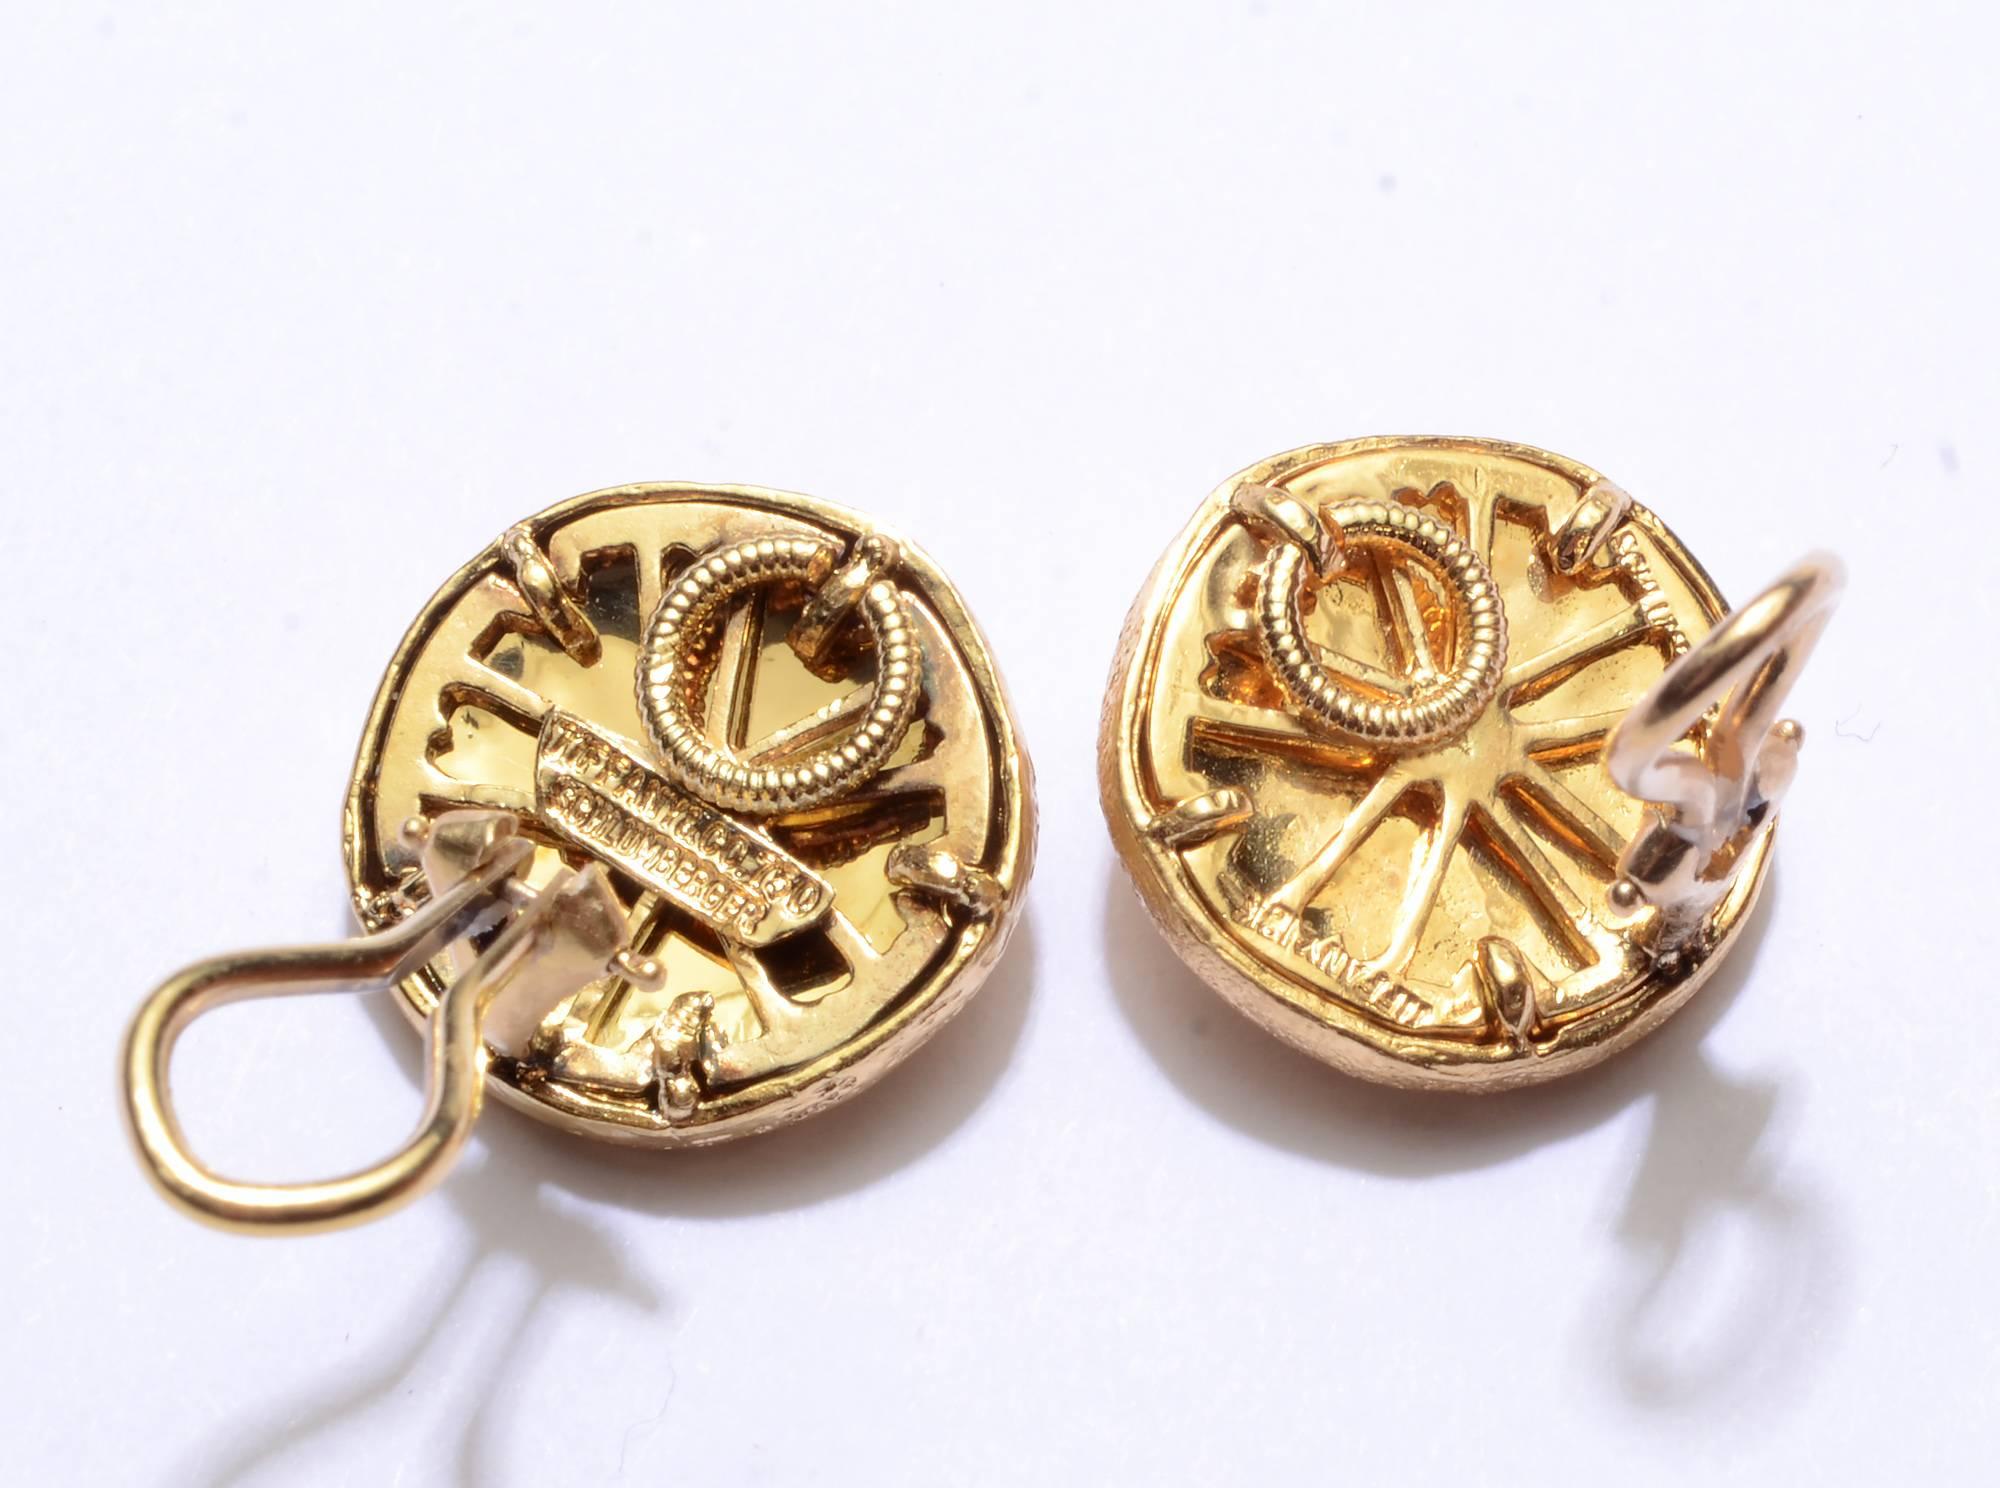 Cinq pétales d'or reposent sur de l'émail brun rougeâtre dans ces boucles d'oreilles conçues par Schlumberger pour Tiffany. Ils mesurent 5/8